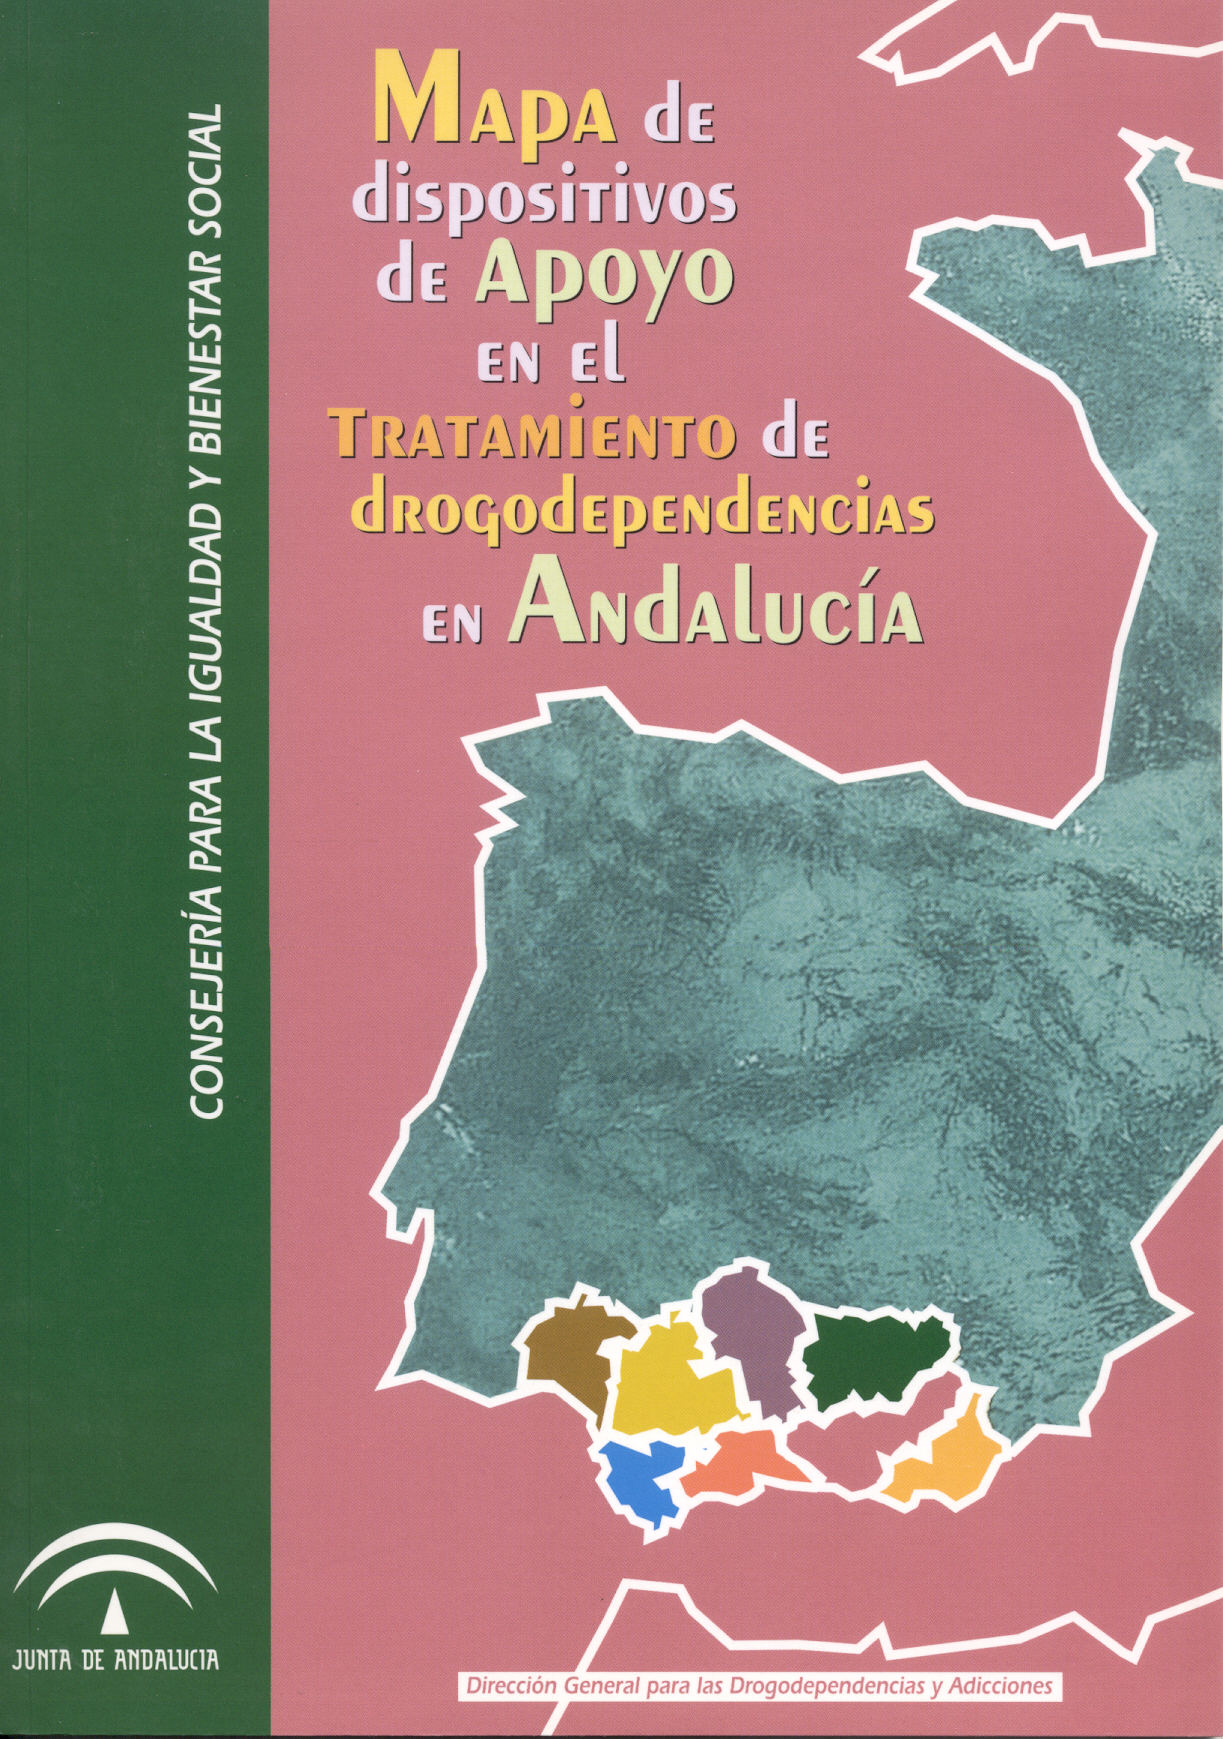 Mapa de dispositivos de Apoyo en el Tratamiento de drogodependencias en Andalucía